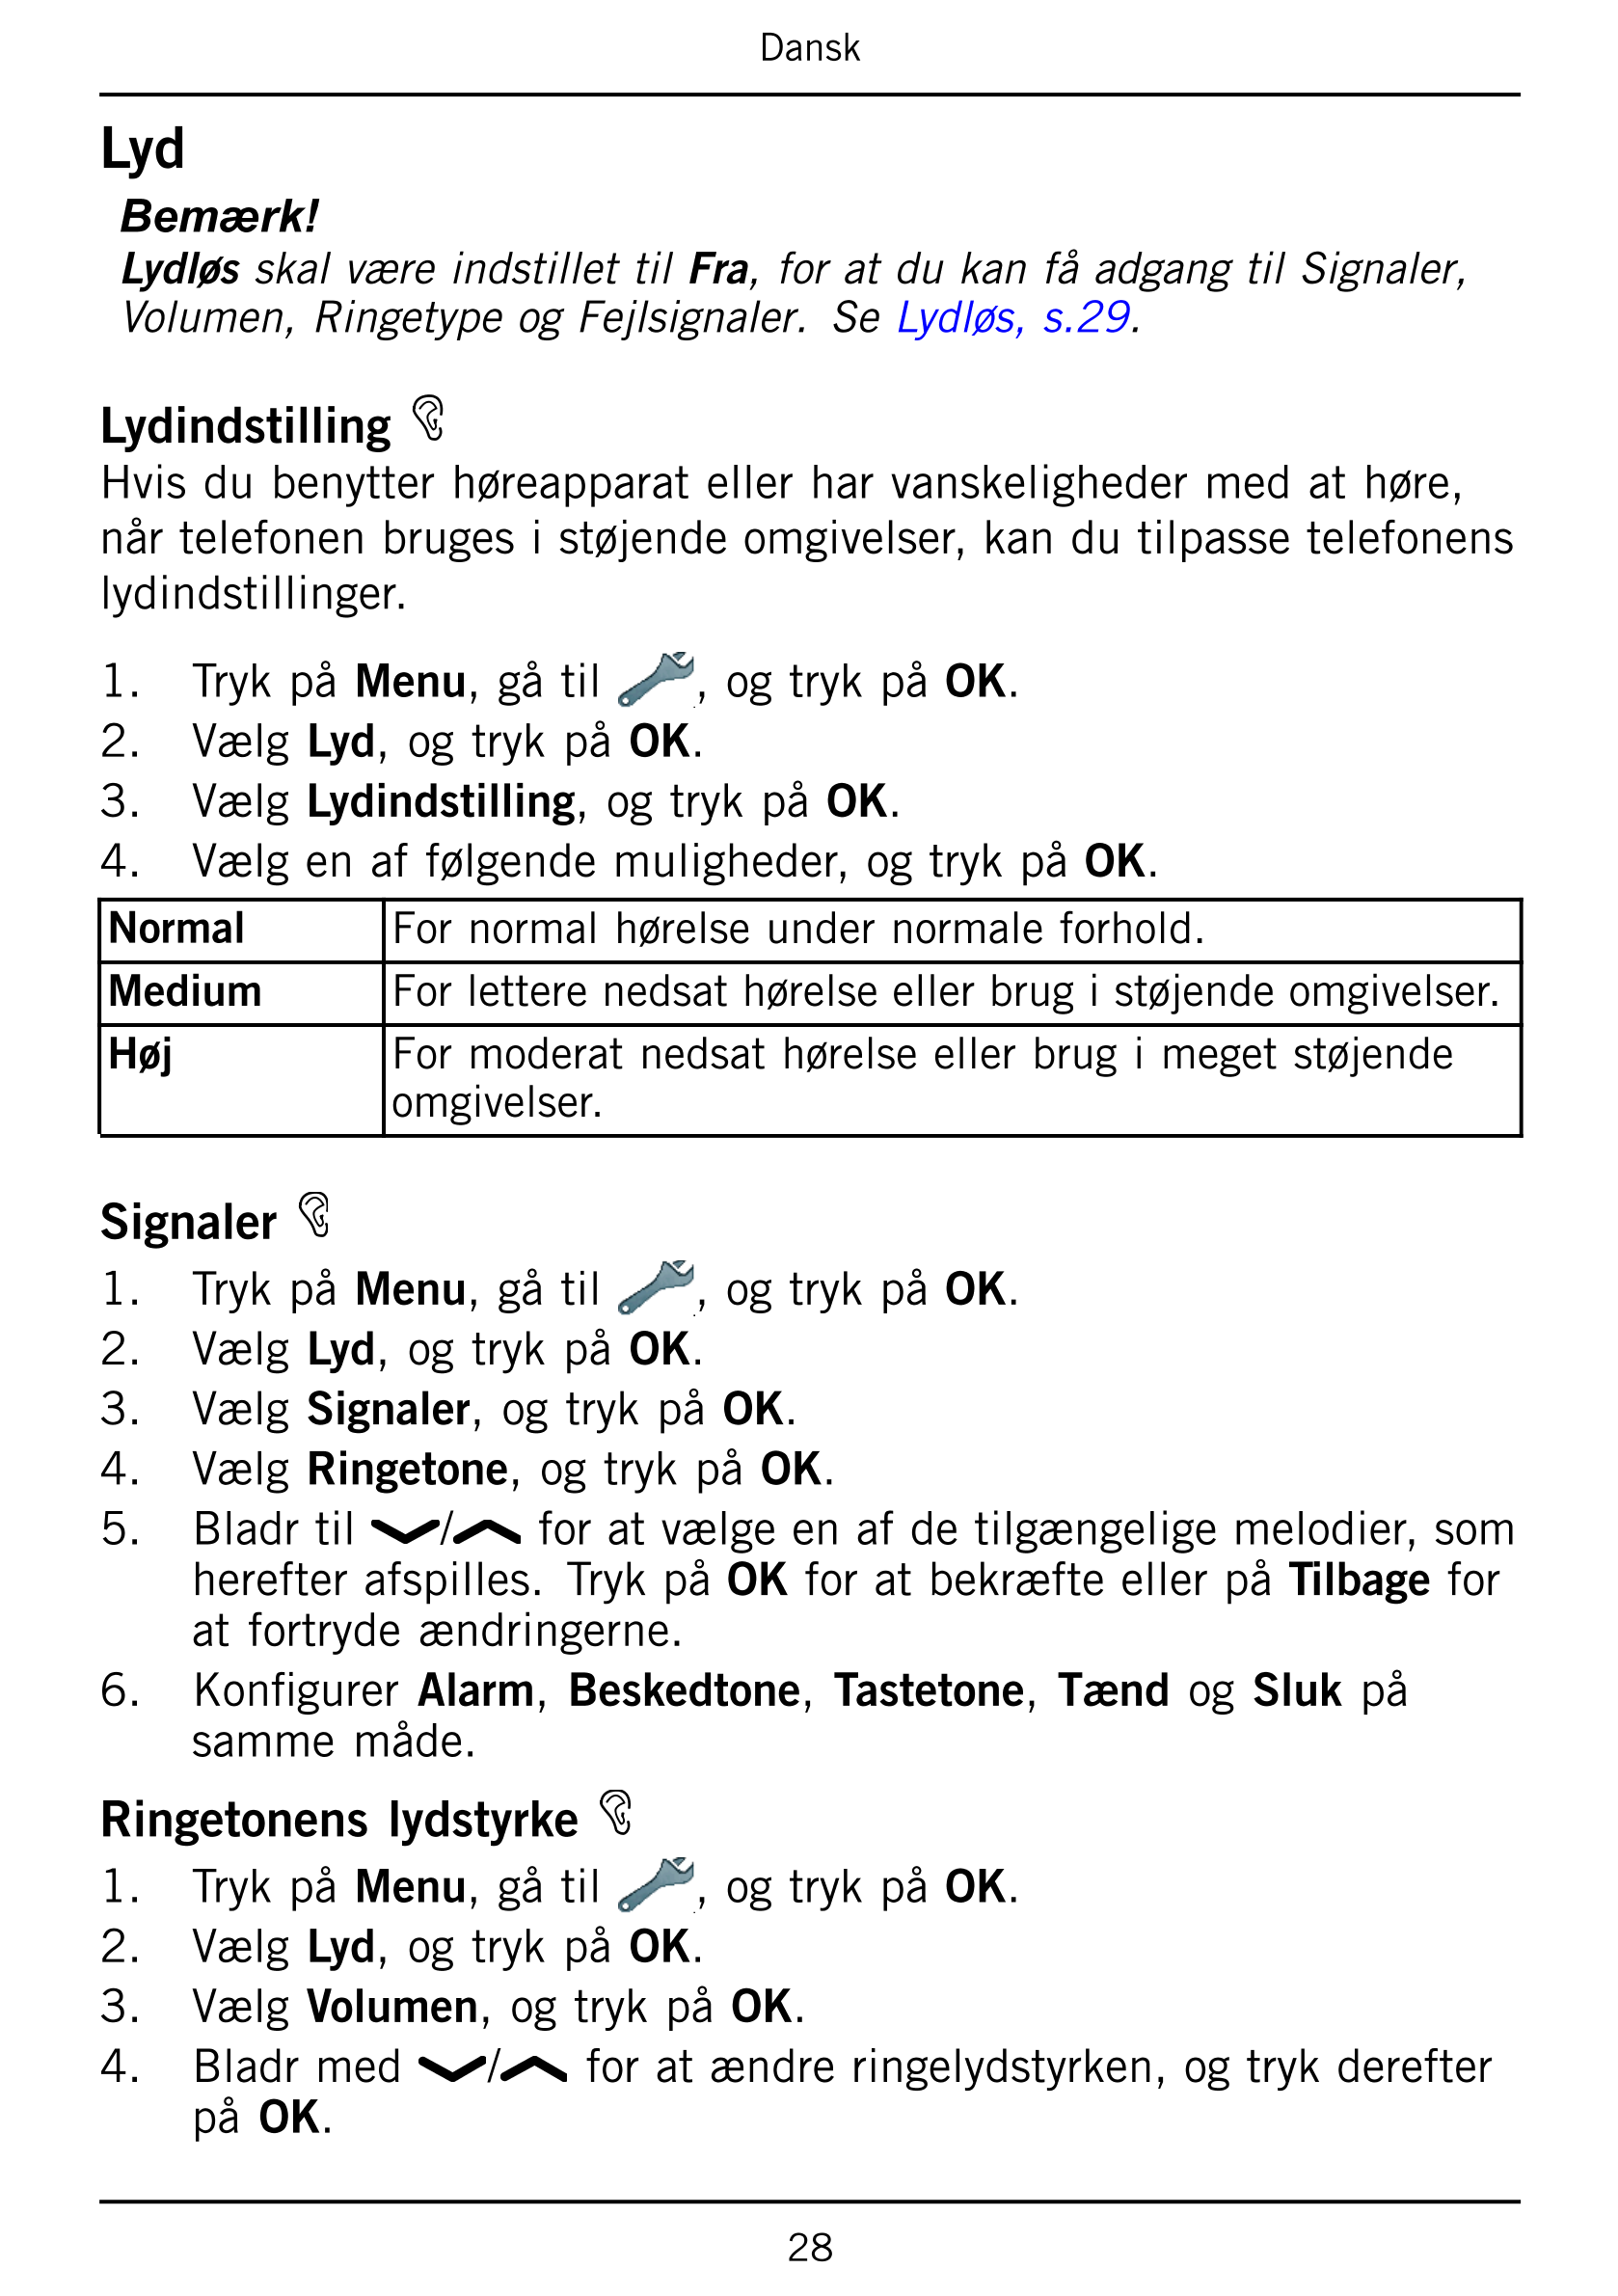 Dansk
Lyd
Bemærk!
Lydløs skal være indstillet til Fra, for at du kan få adgang til Signaler,
Volumen, Ringetype og Fejlsignaler.